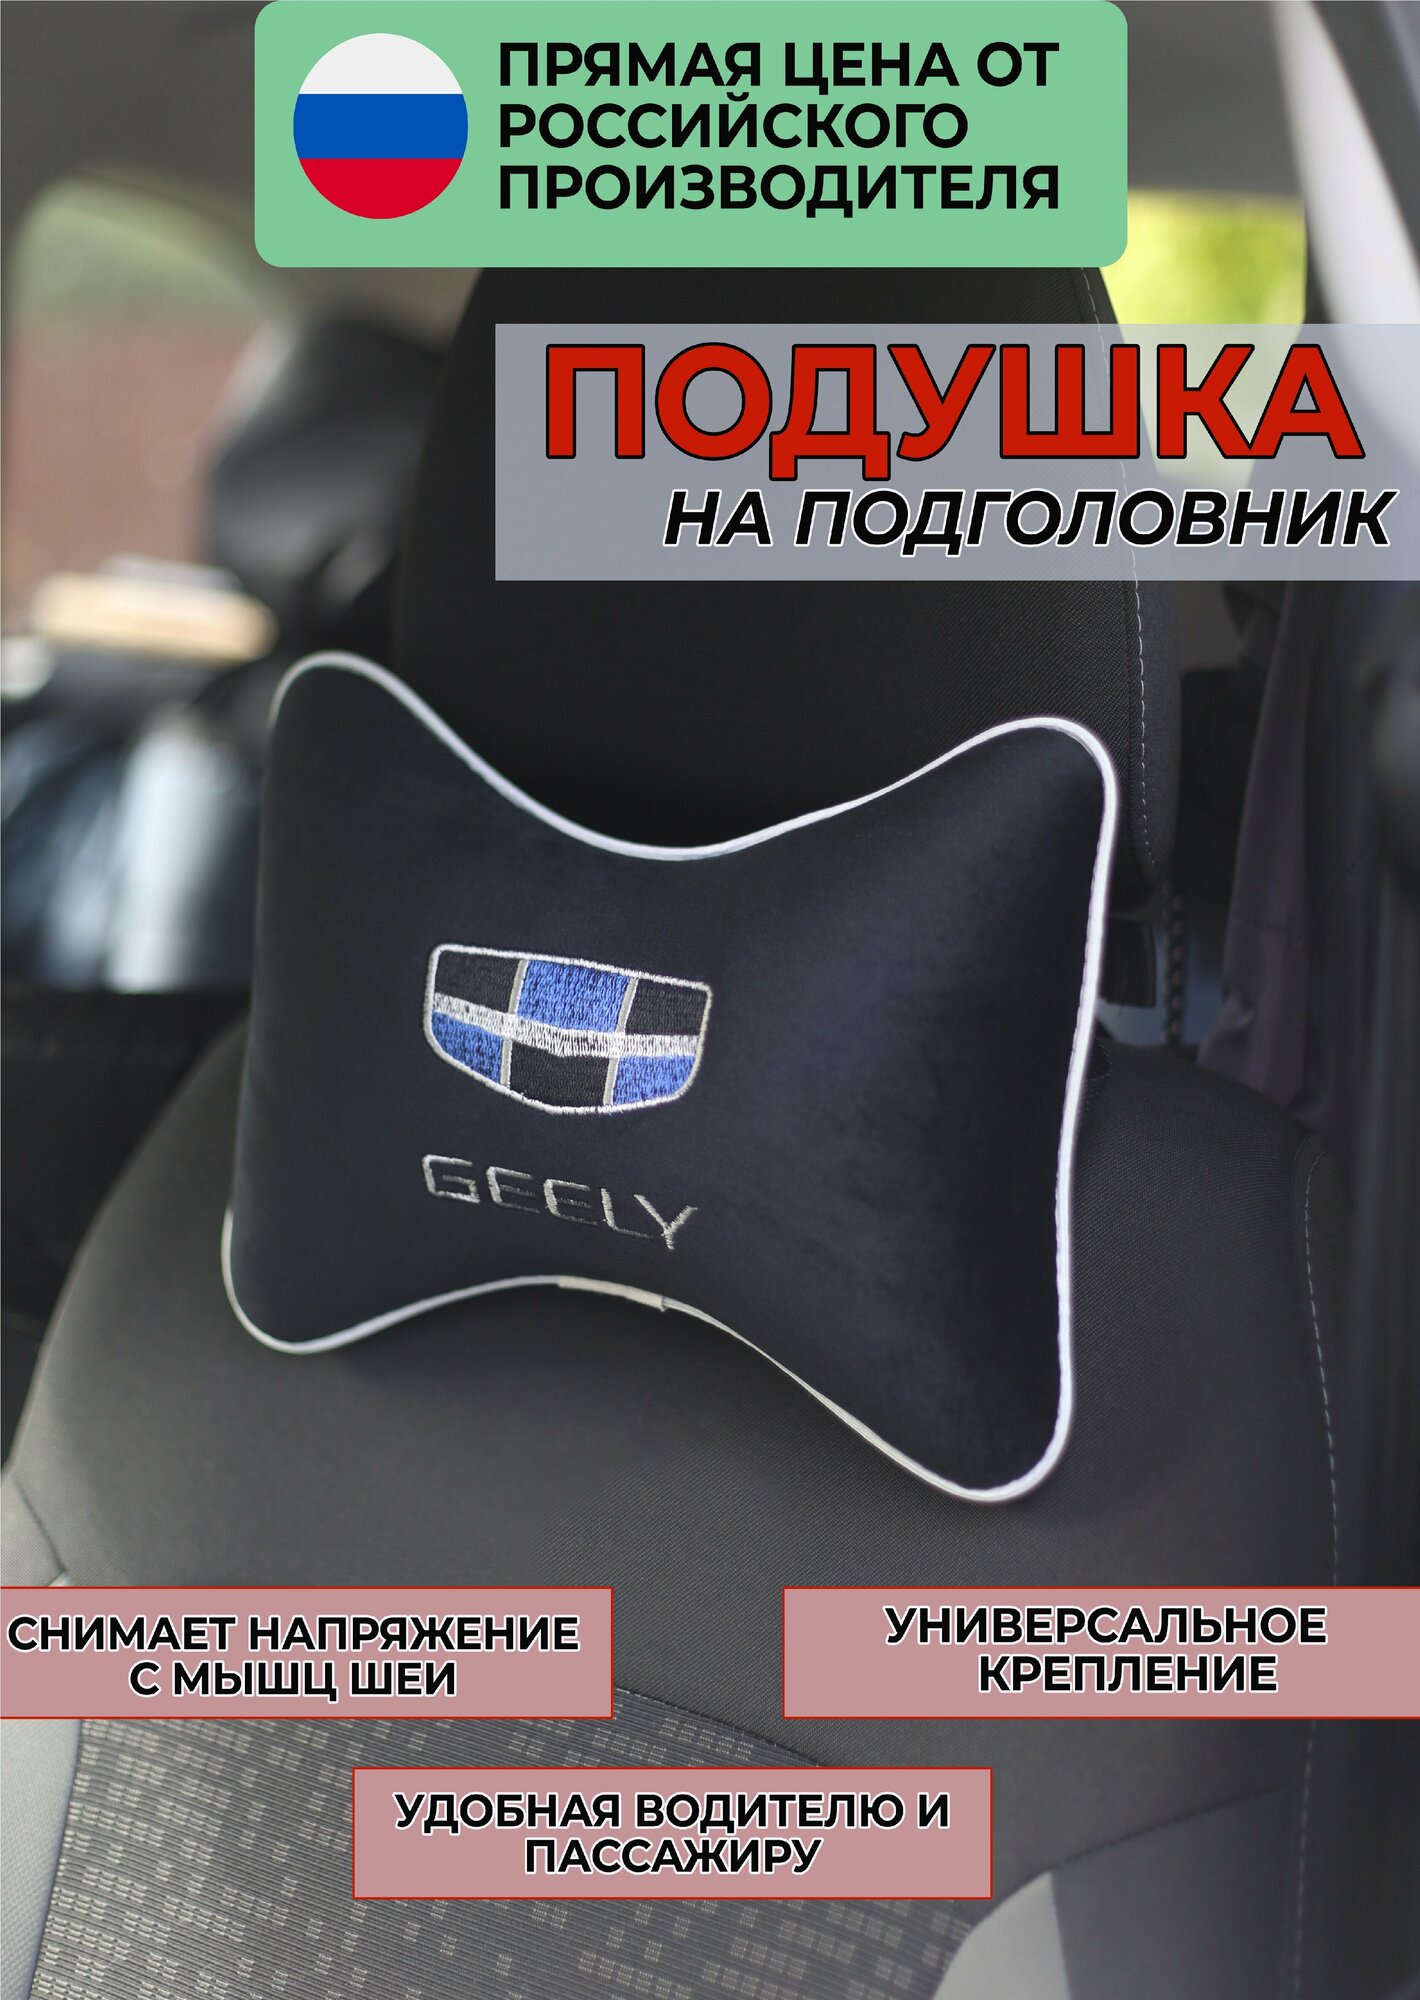 Подушка на подголовник из велюра с логотипом "GEELY",/подушка для путешествий в машину/подушка под голову/ Премиум качество/черная